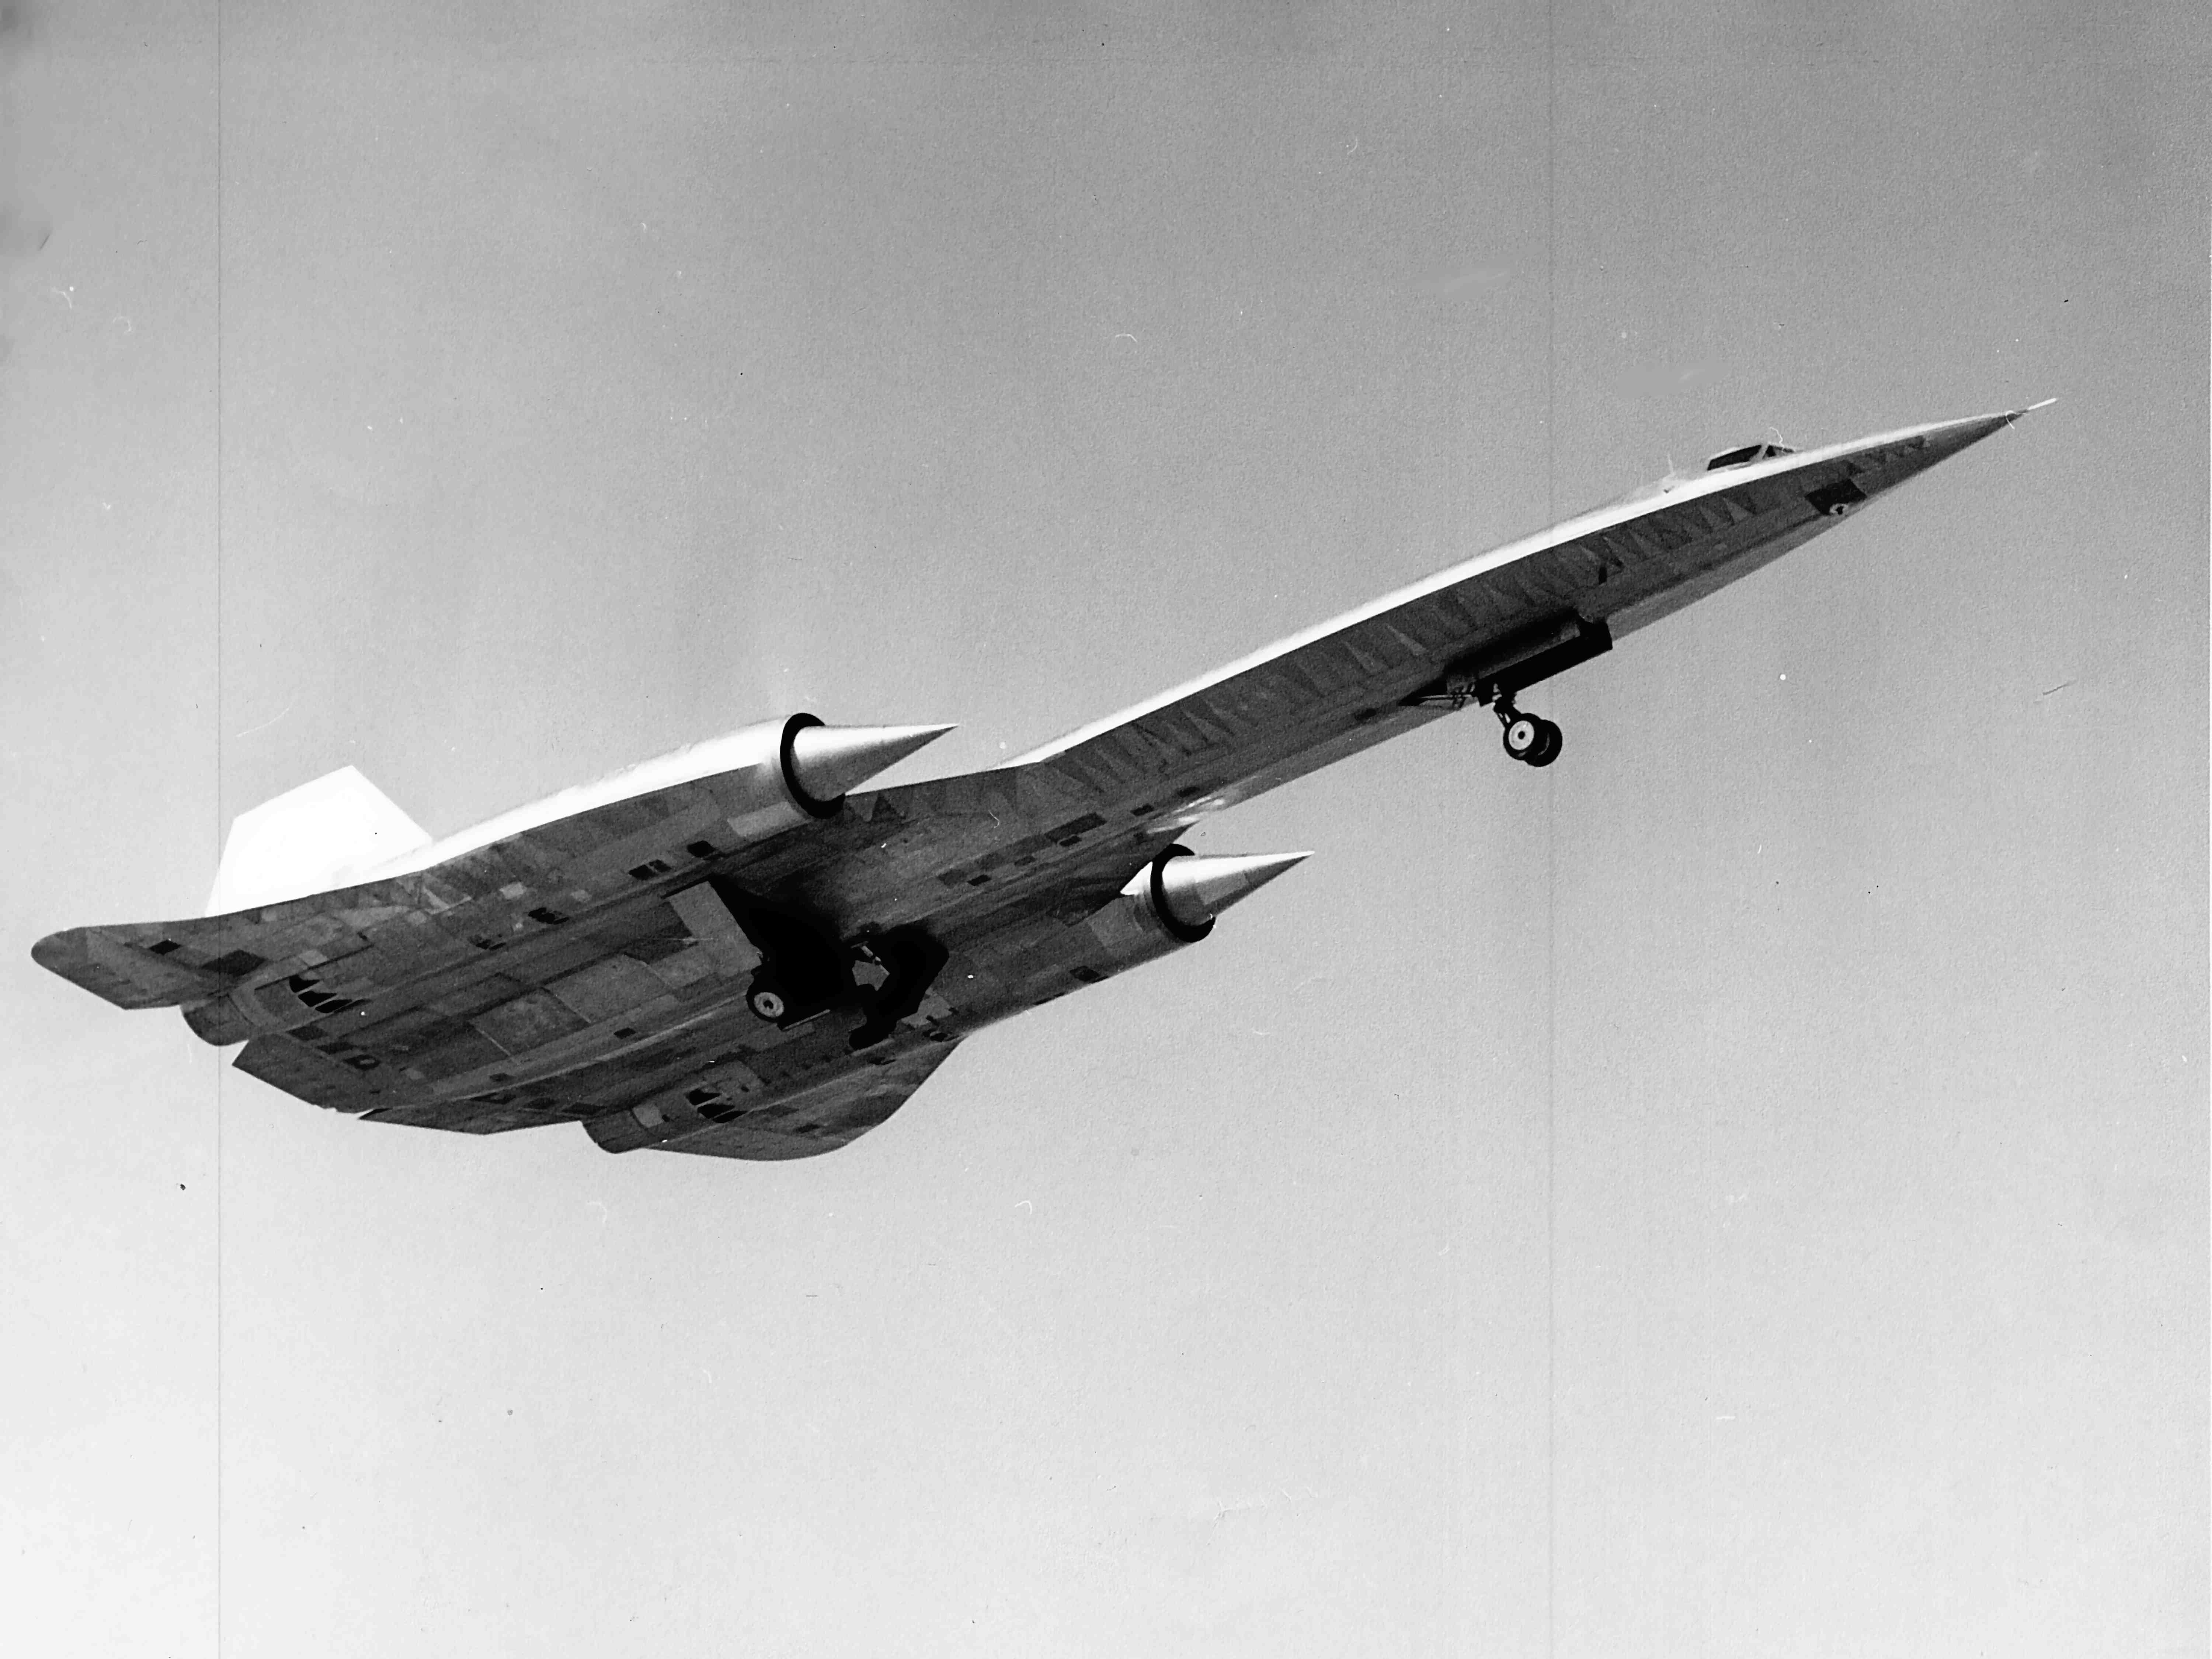 Tận hưởng tốc độ và sự mạnh mẽ của chiếc máy bay tiêm kích nổi tiếng đến từ Lockheed Martin với hình nền A-12, tạo nên cảm giác lôi cuốn và thú vị cho bạn.